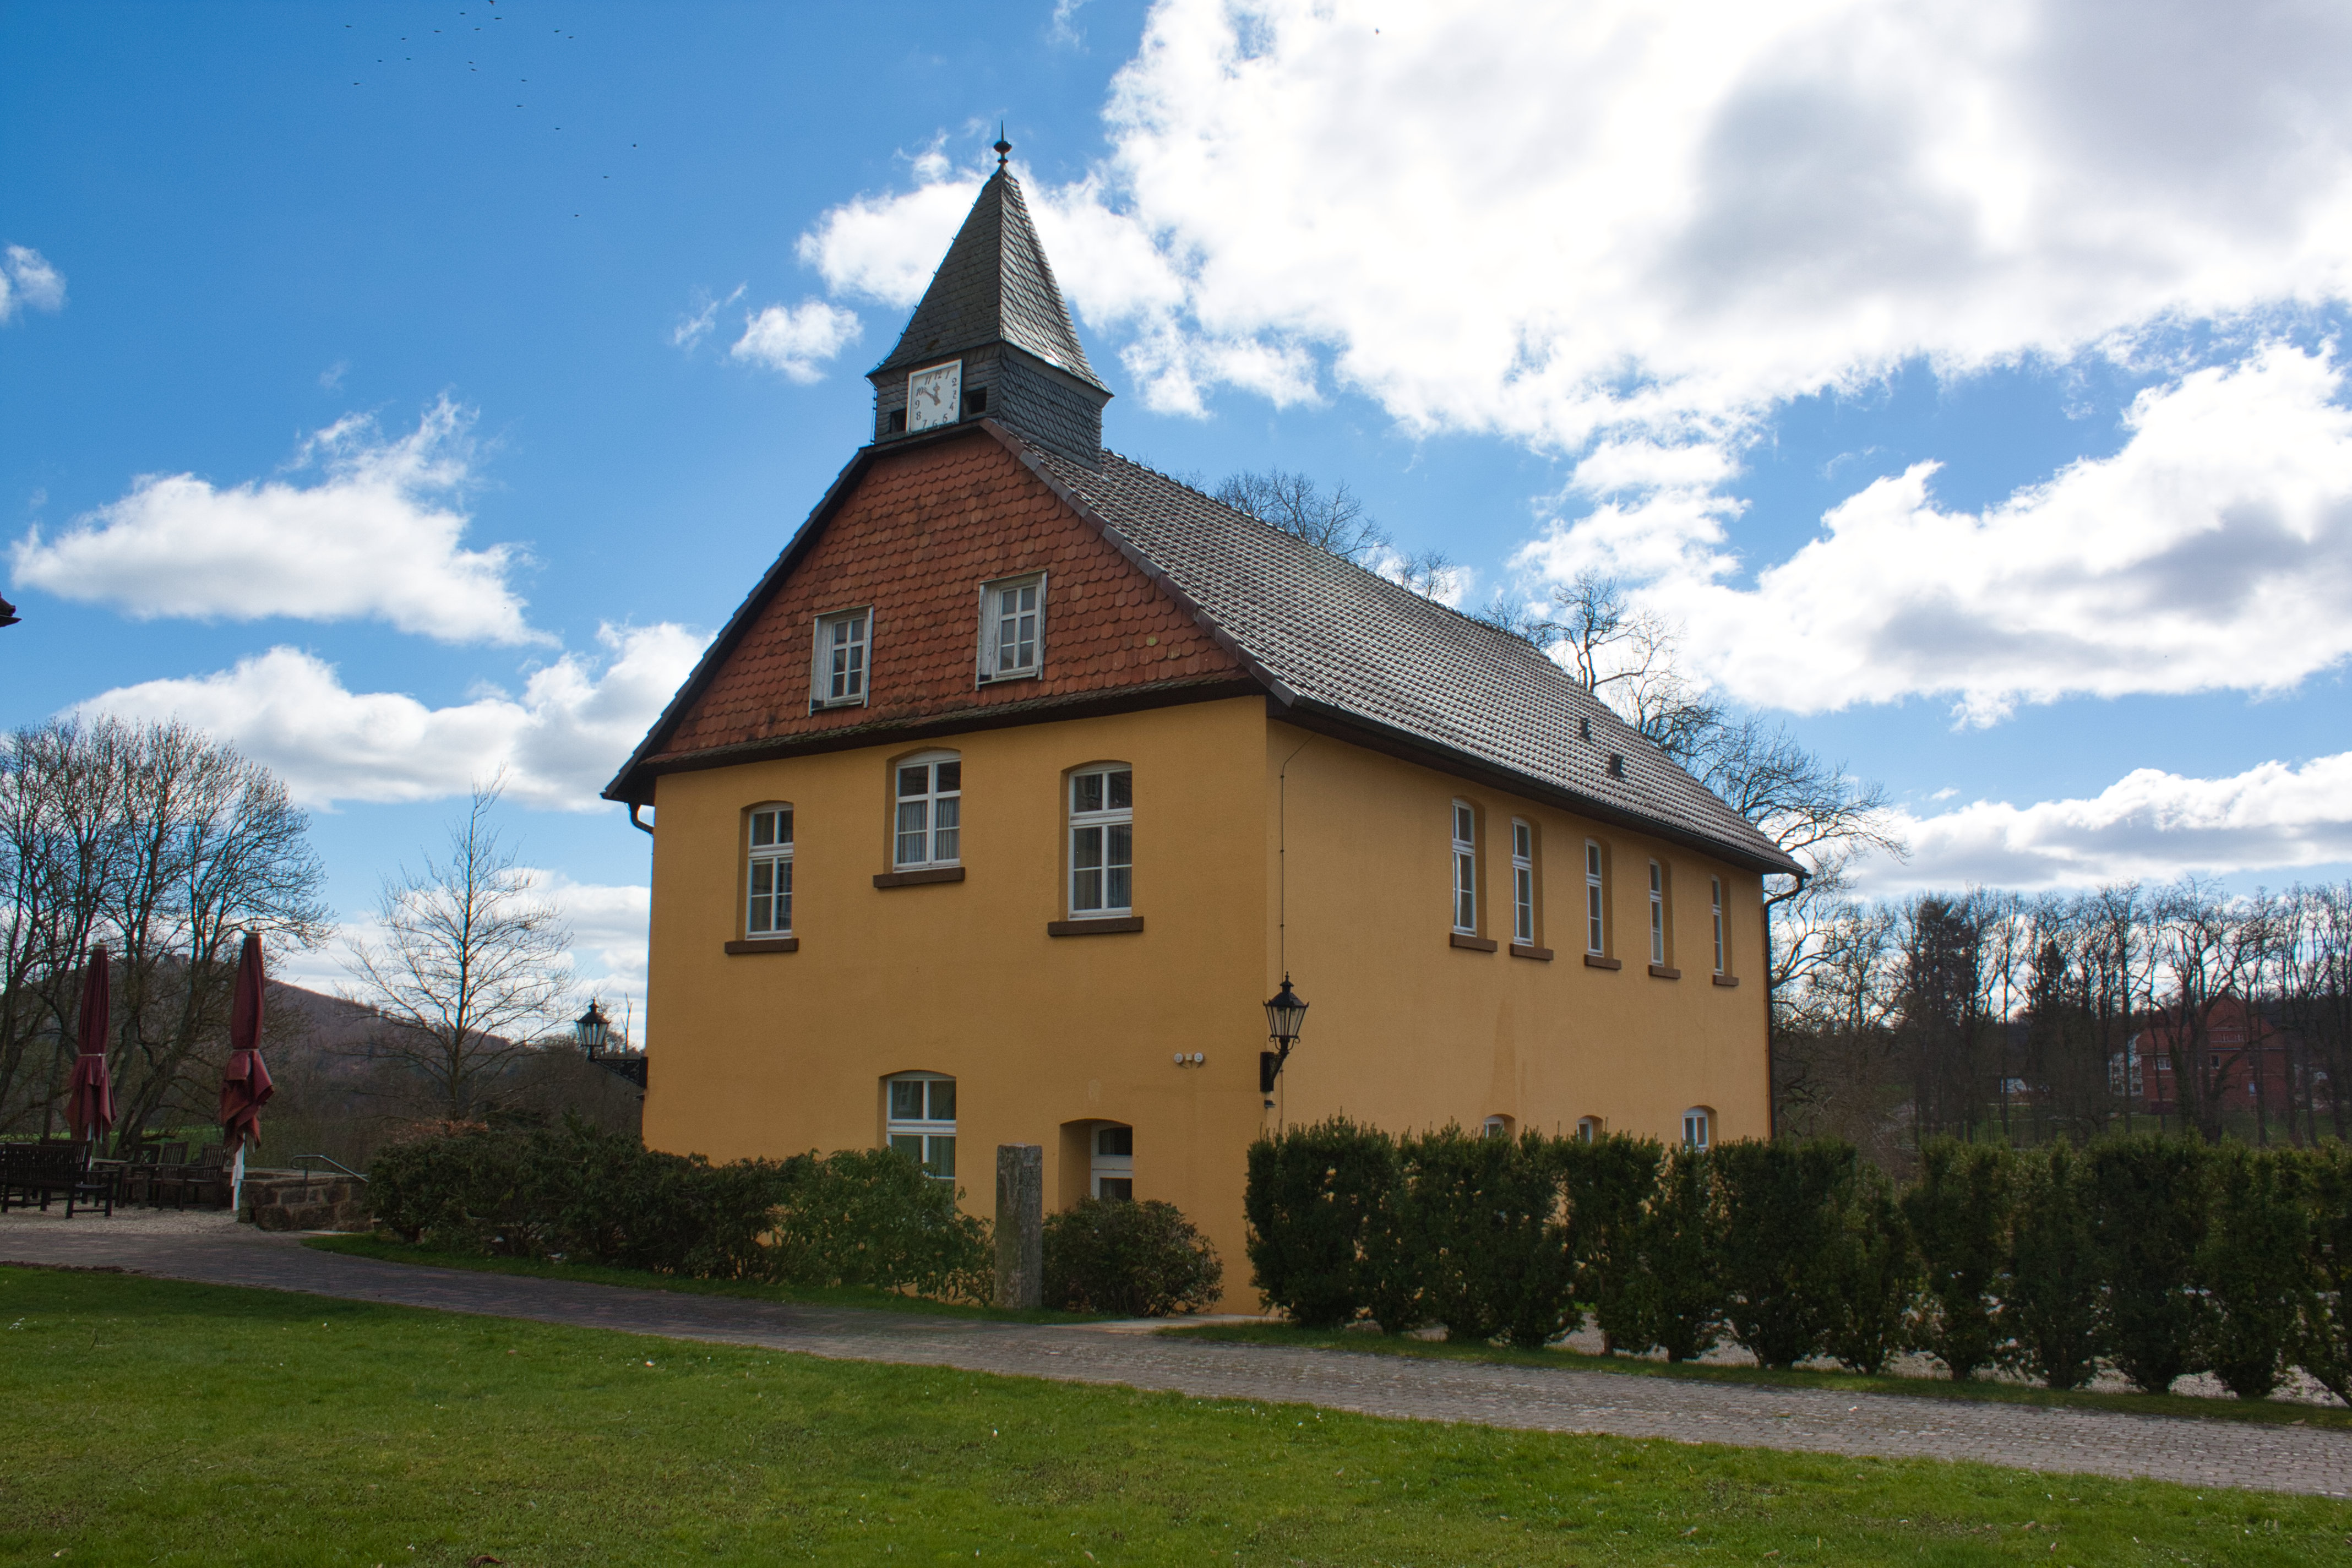 Haus Eulenburg neben dem Schloss Höhnscheid in Bad Arolsen.
